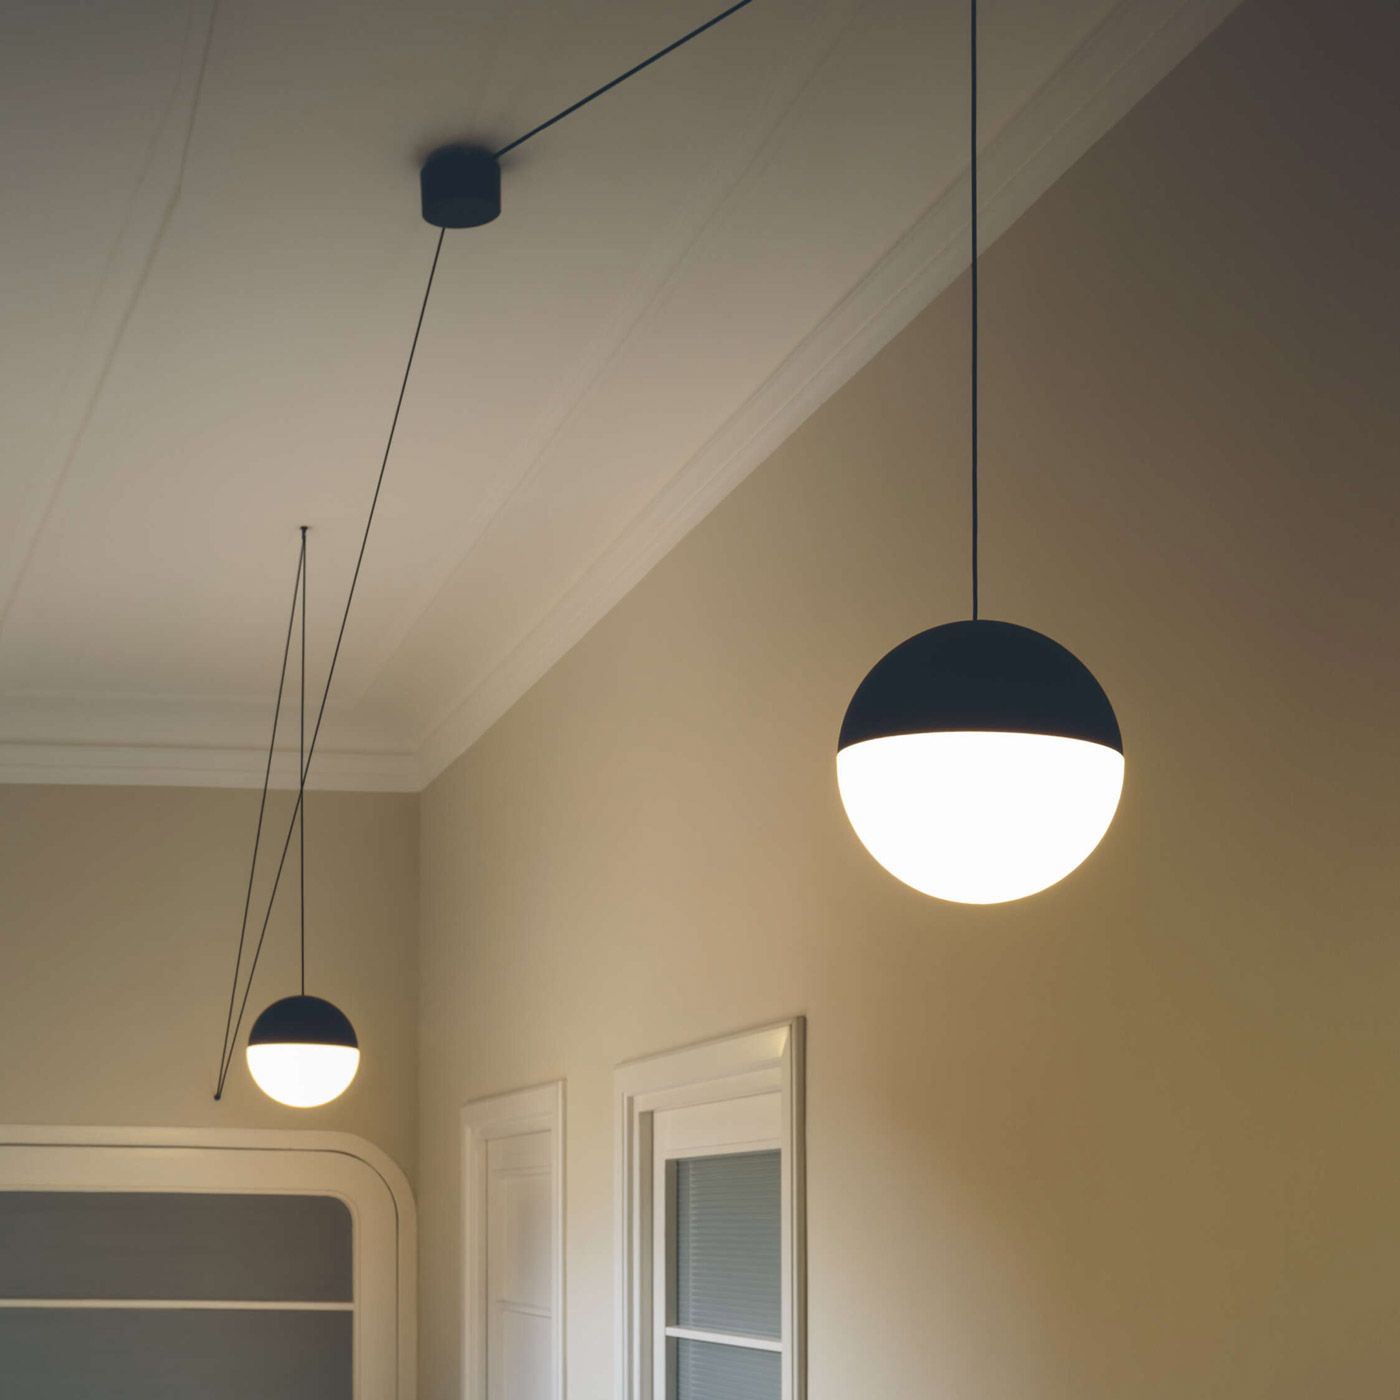 Flos String Light Ball Head Pendant Lamp 22m svart med app Casambi